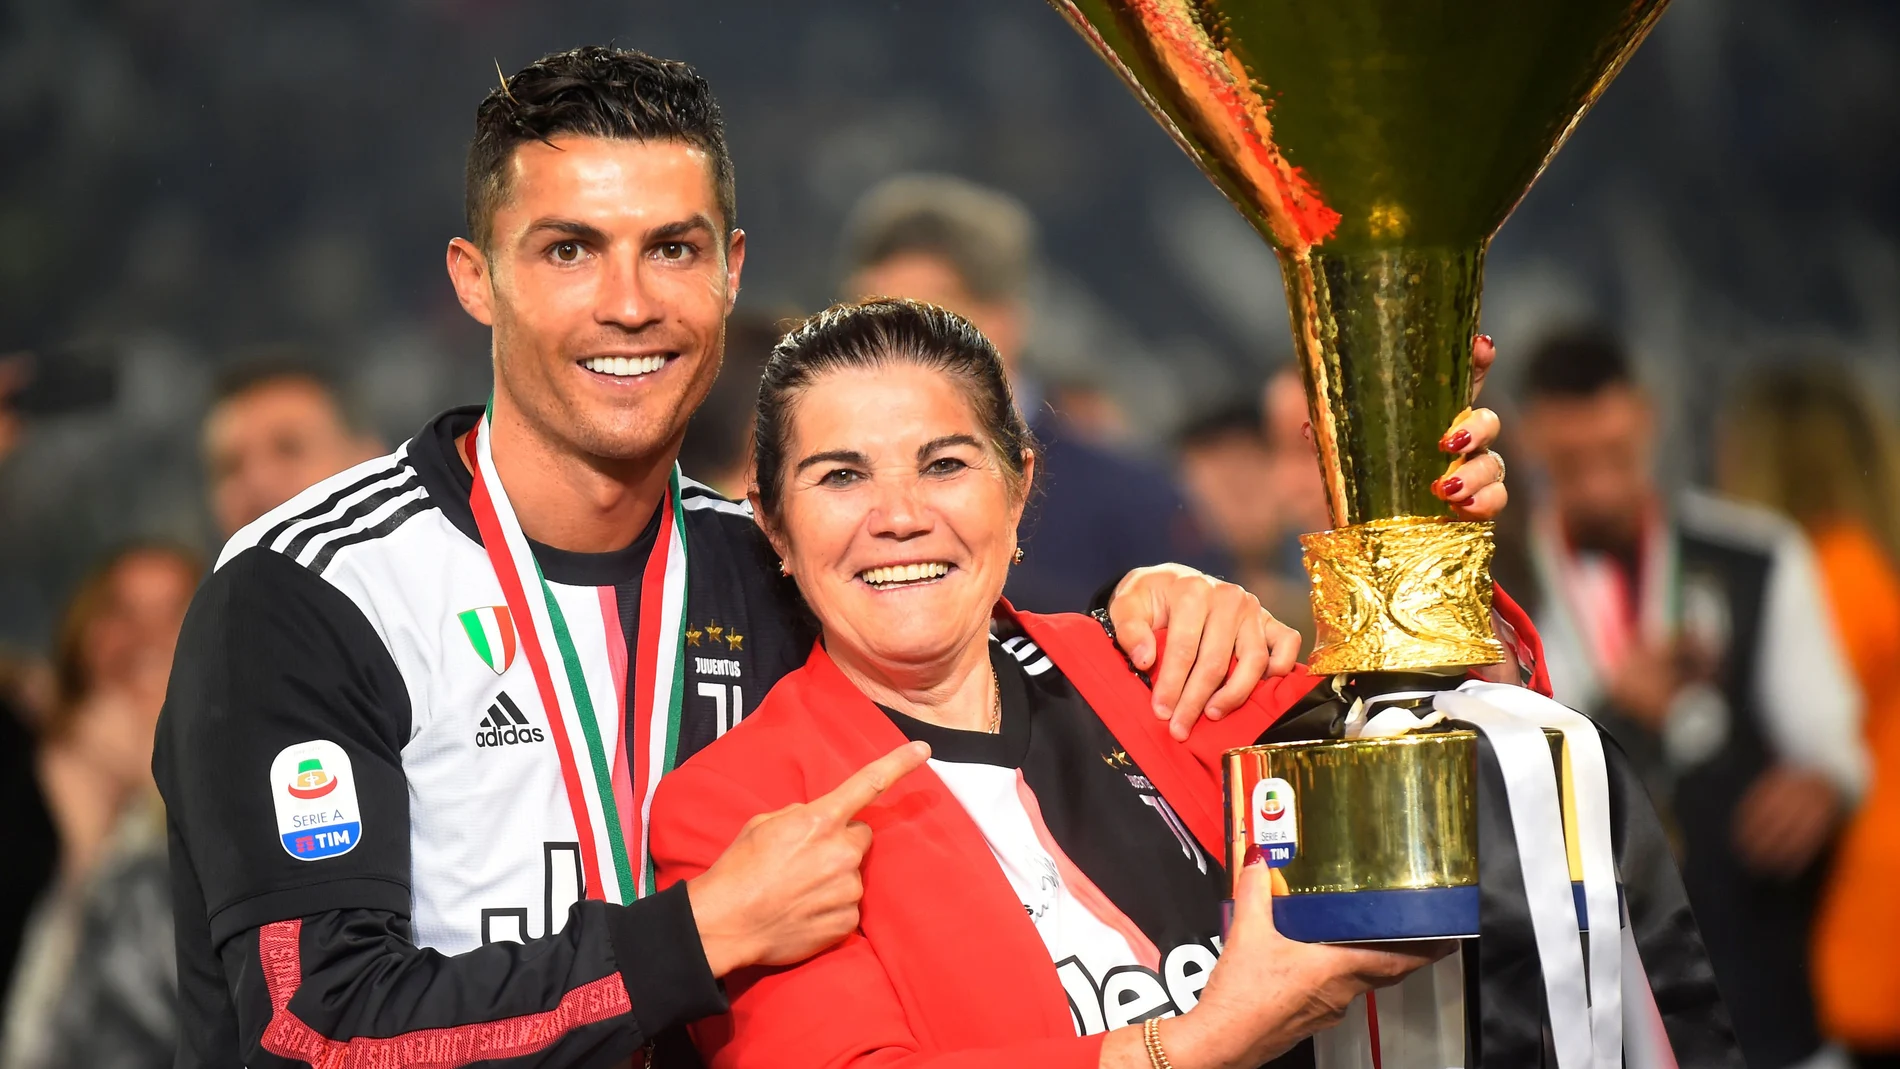 La madre de Cristiano Ronaldo ha sufrido un derrame cerebral REUTERS/Massimo Pinca